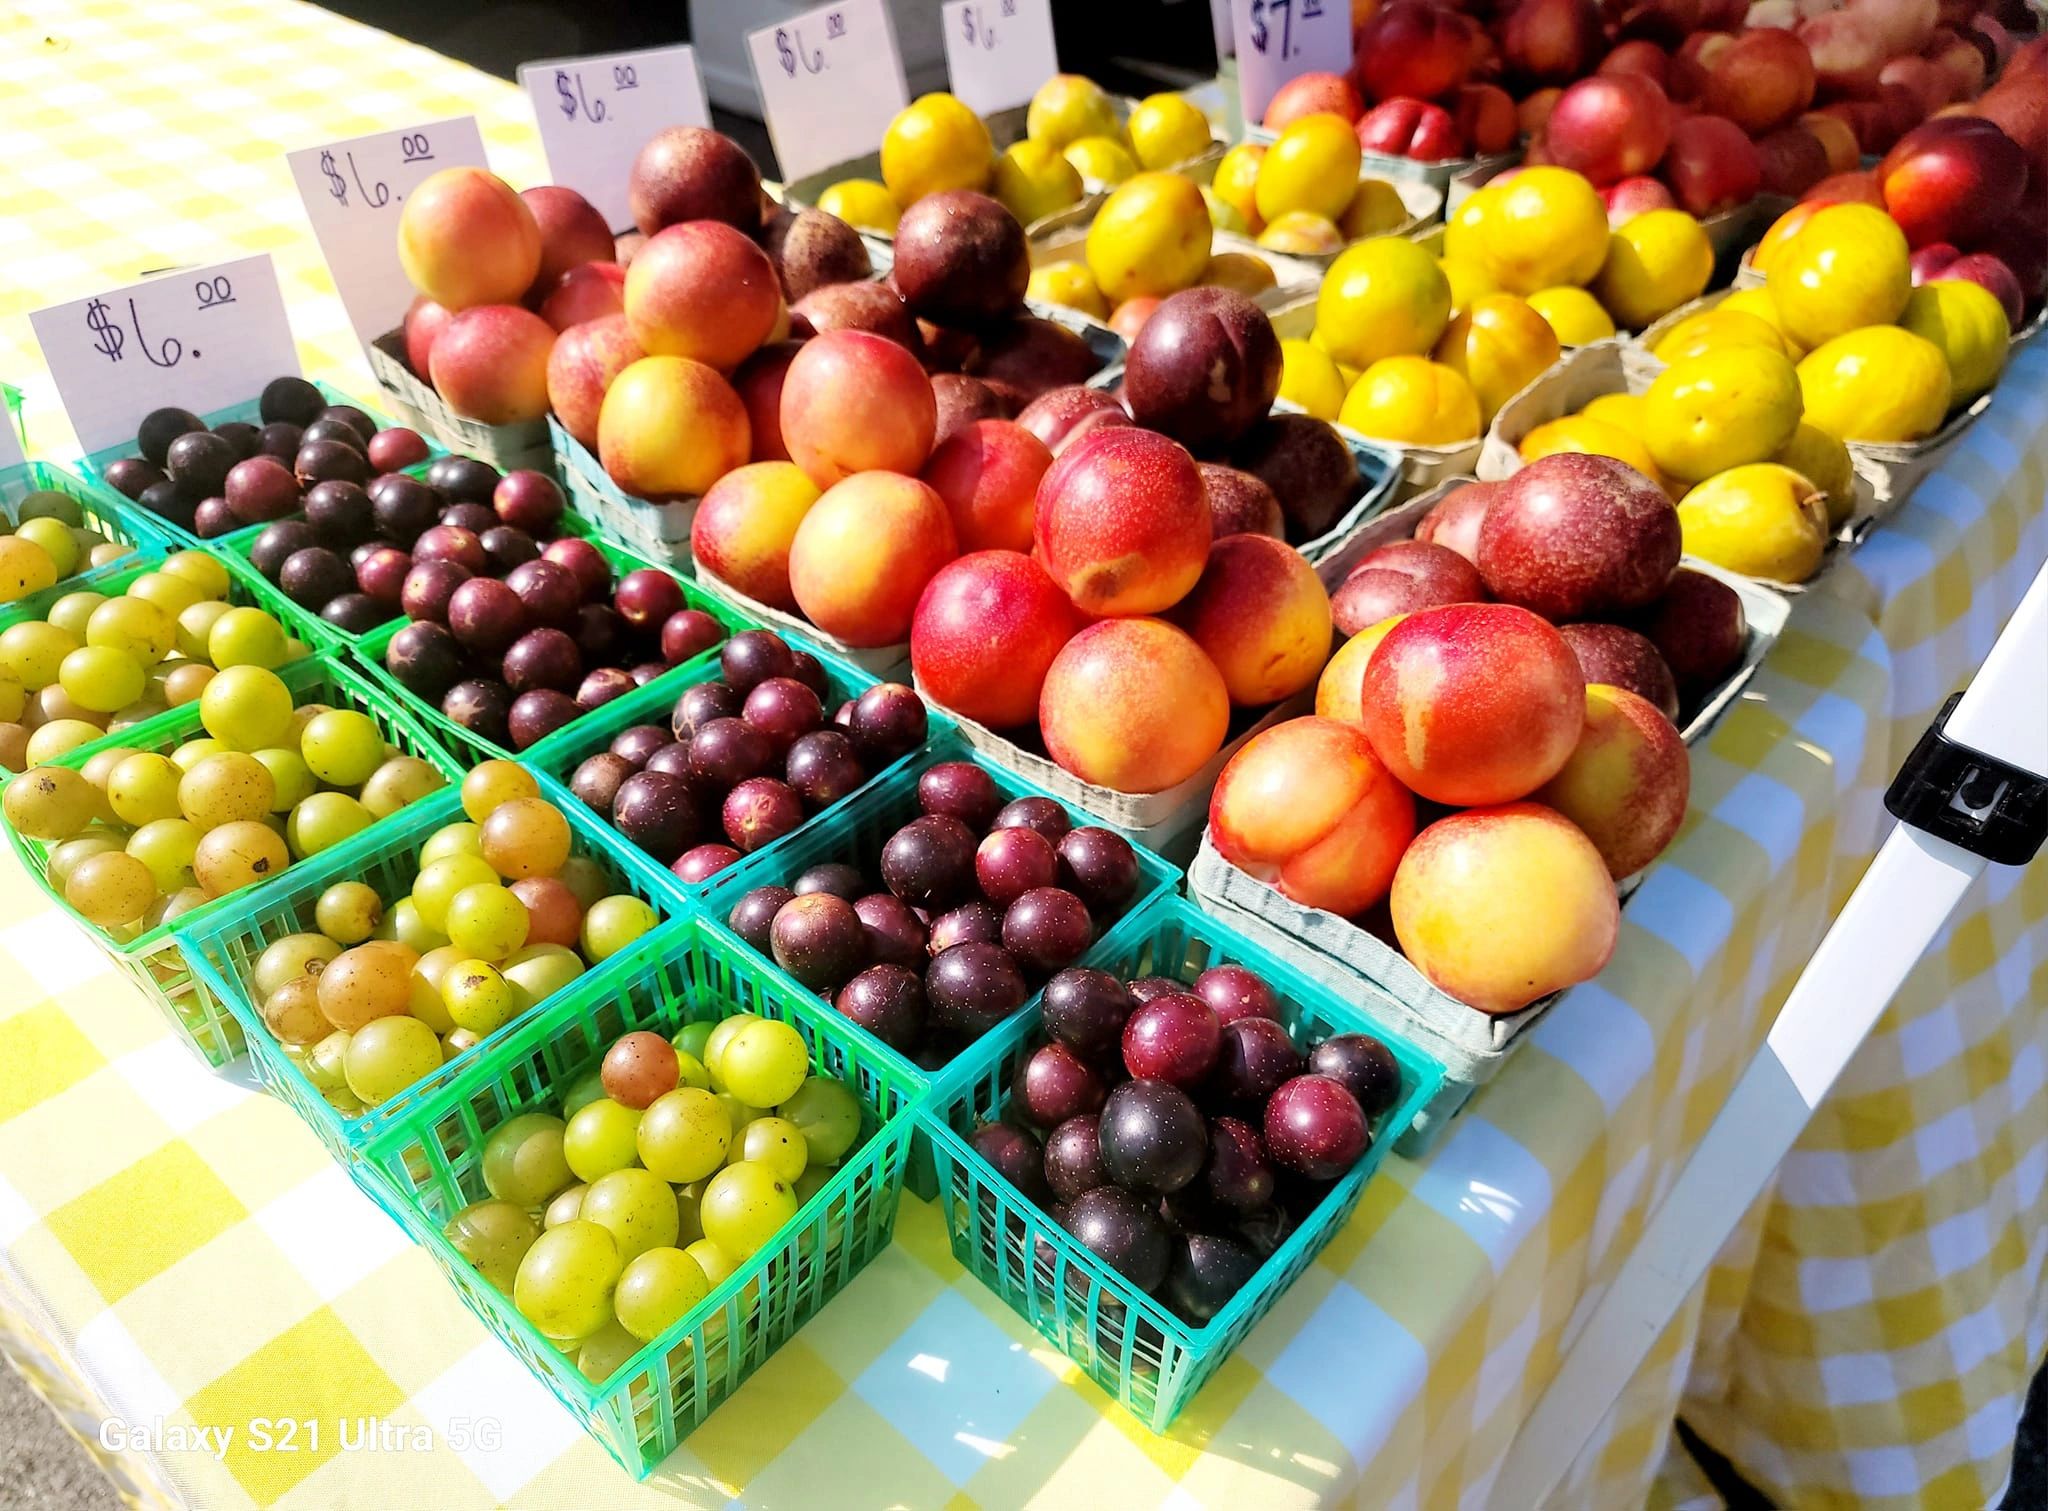 farmers market fruit